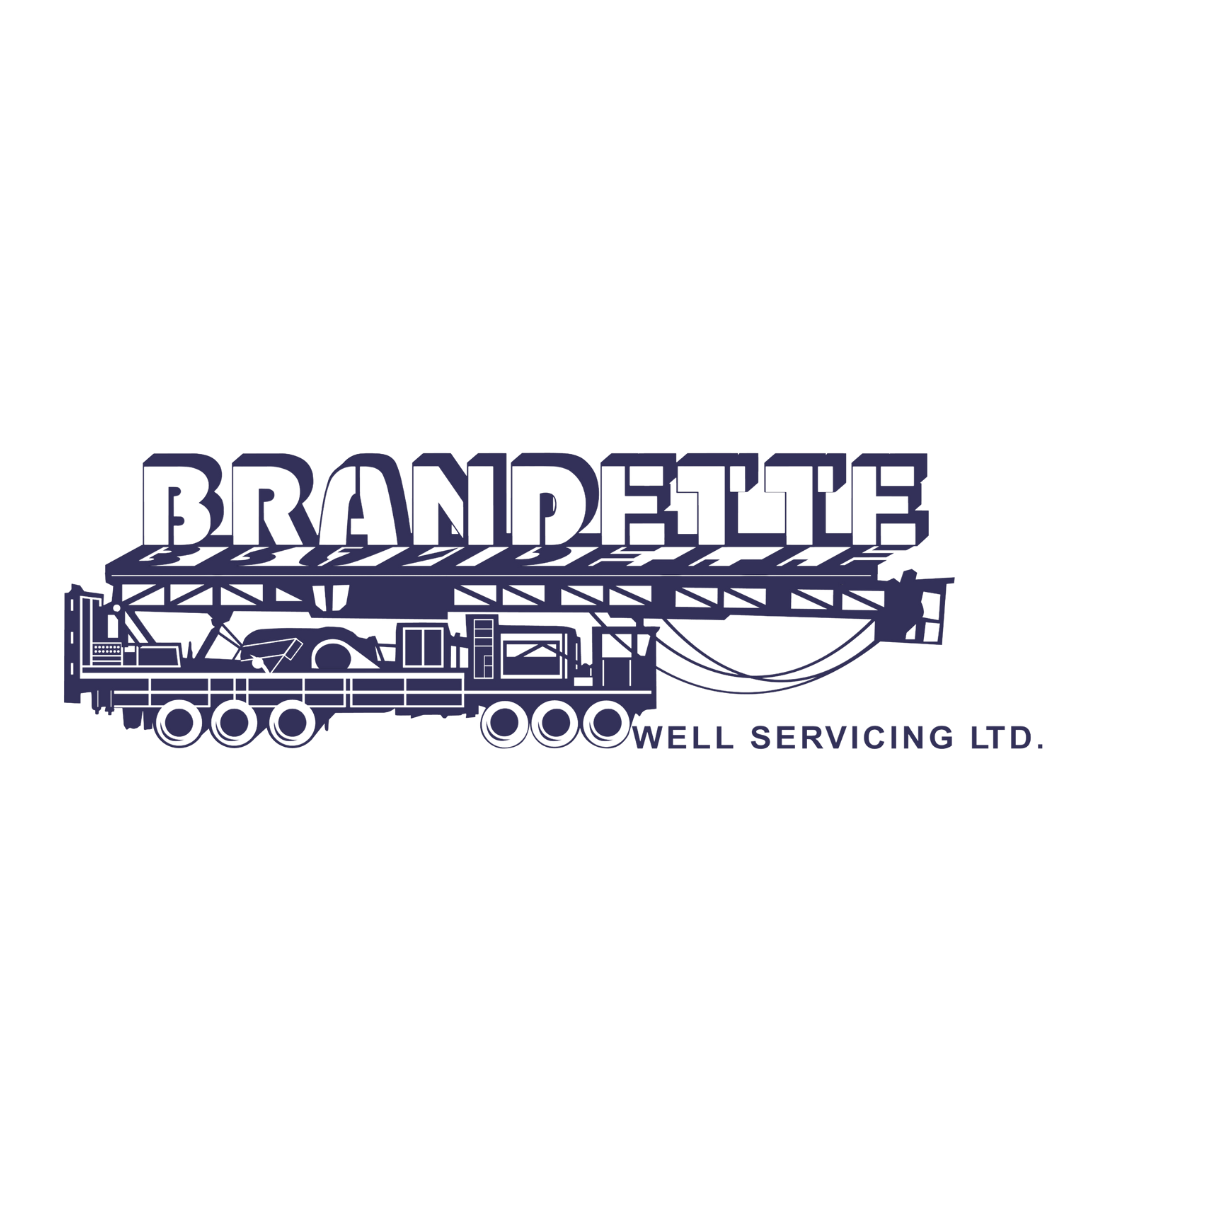 brandette.png